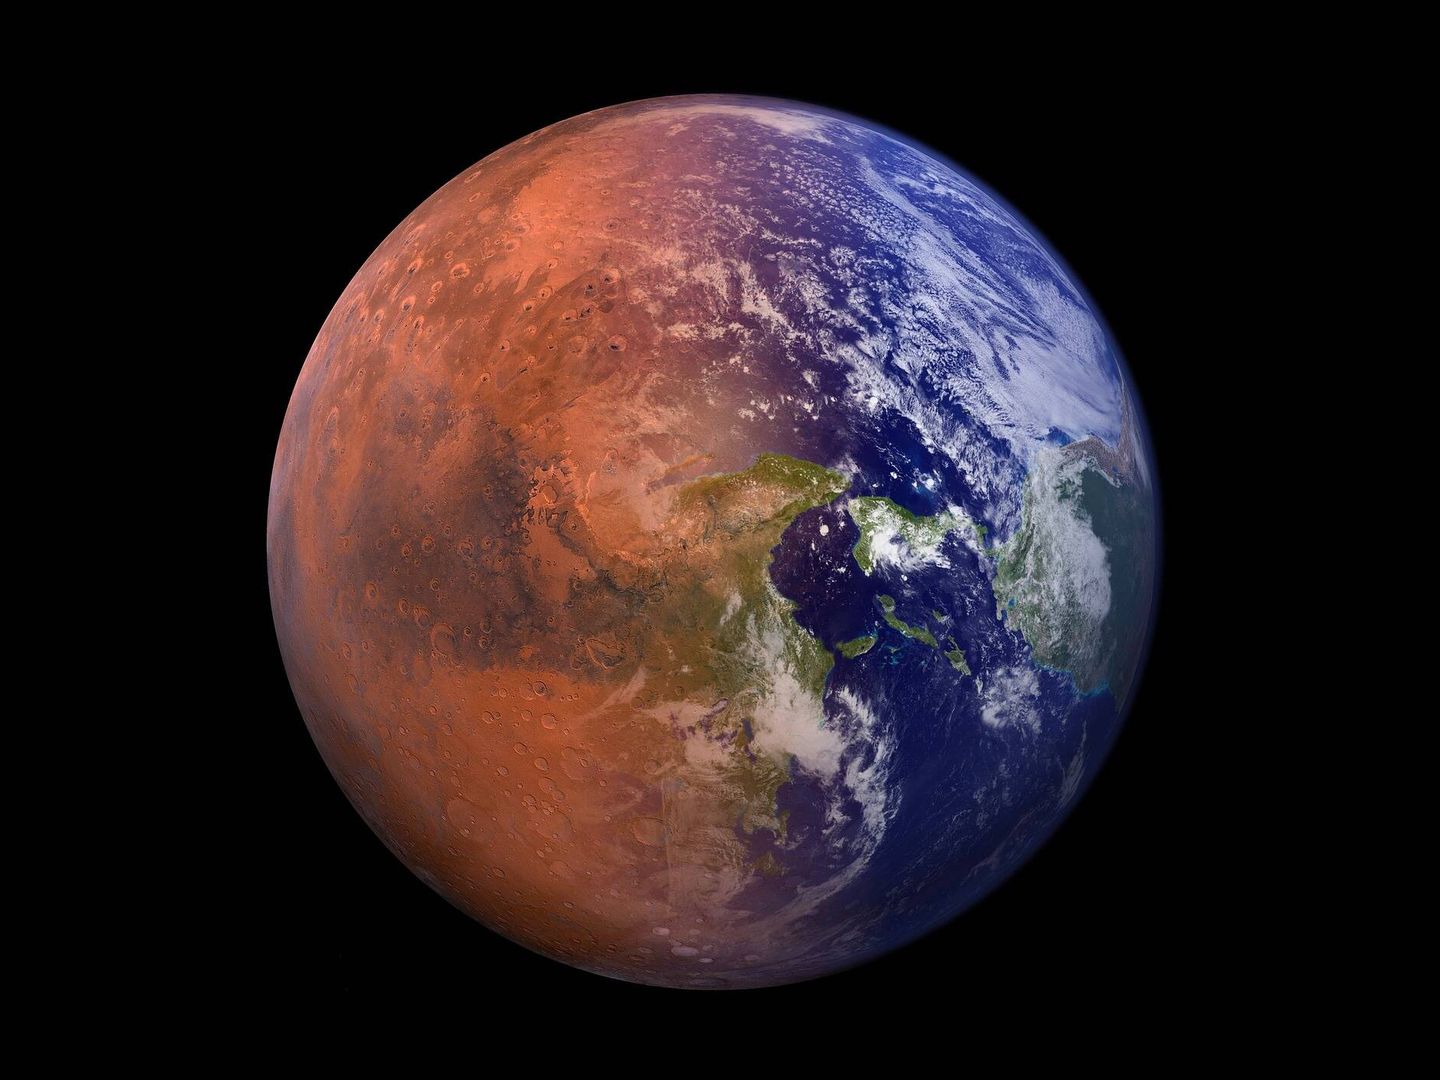 Un exjefe de la NASA afirma que podemos convertir Marte y Venus en nuevas Tierras